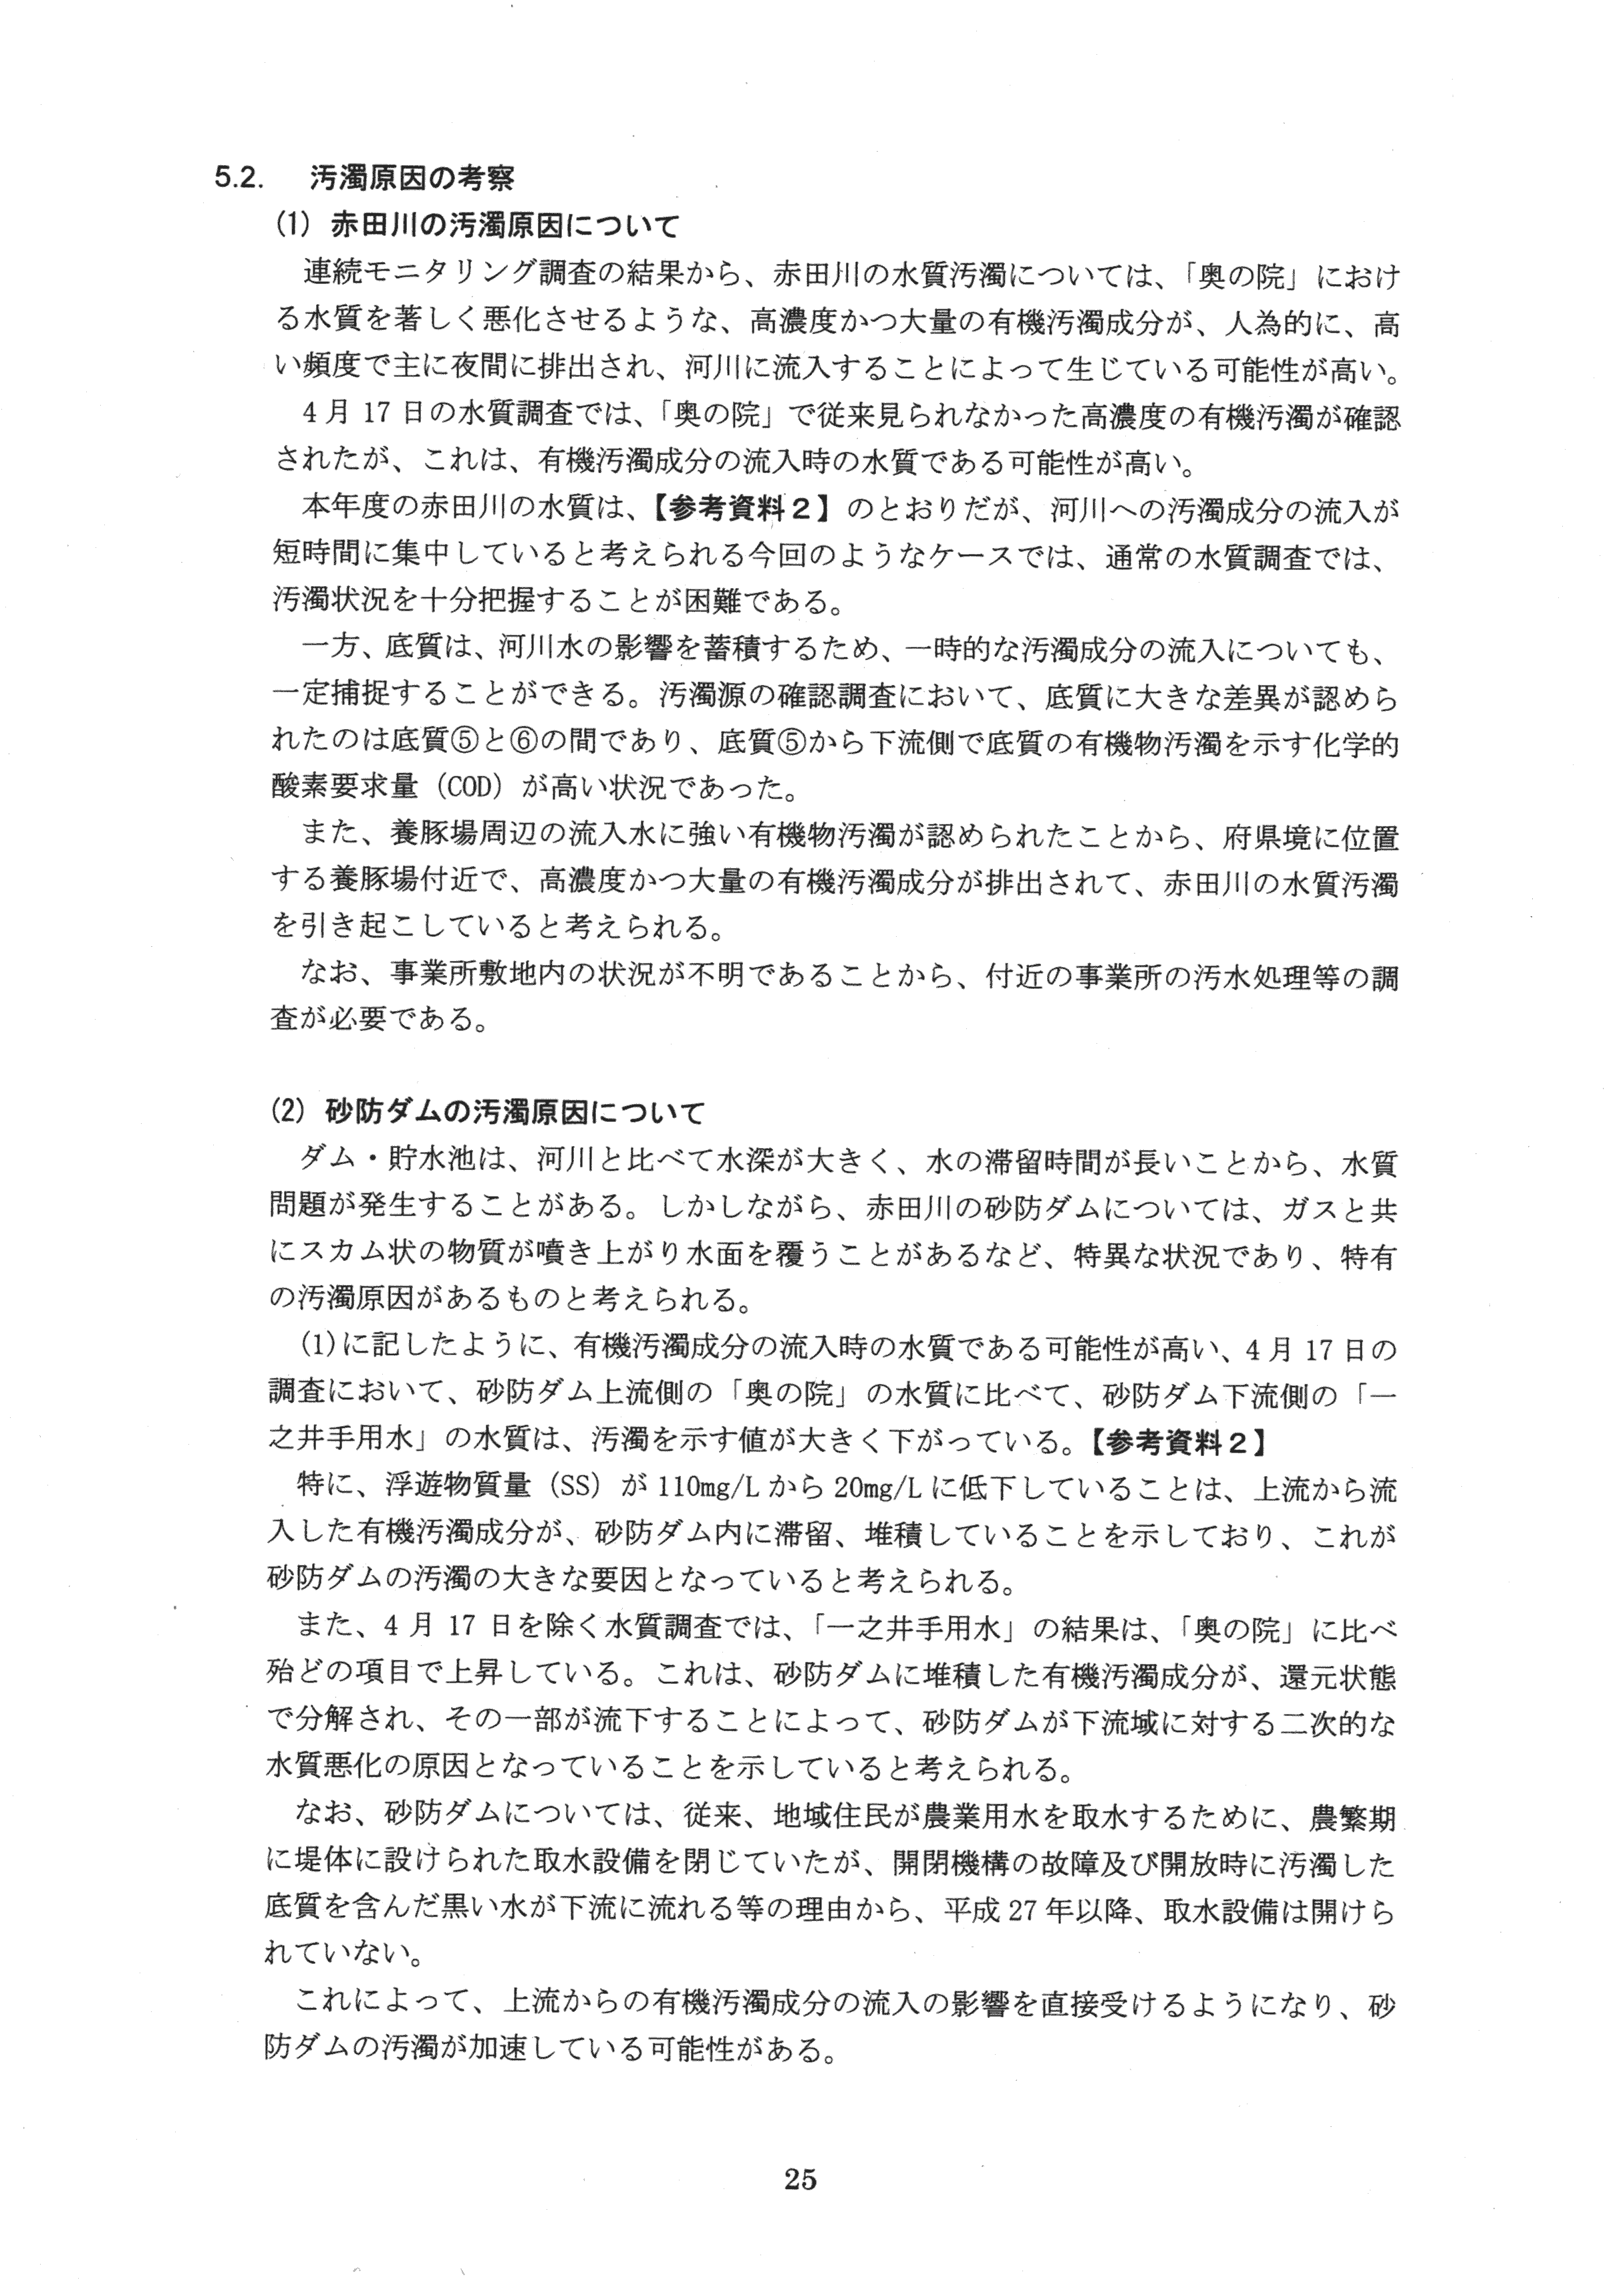 平成29年11月-赤田川水質汚濁状況調査報告書-27